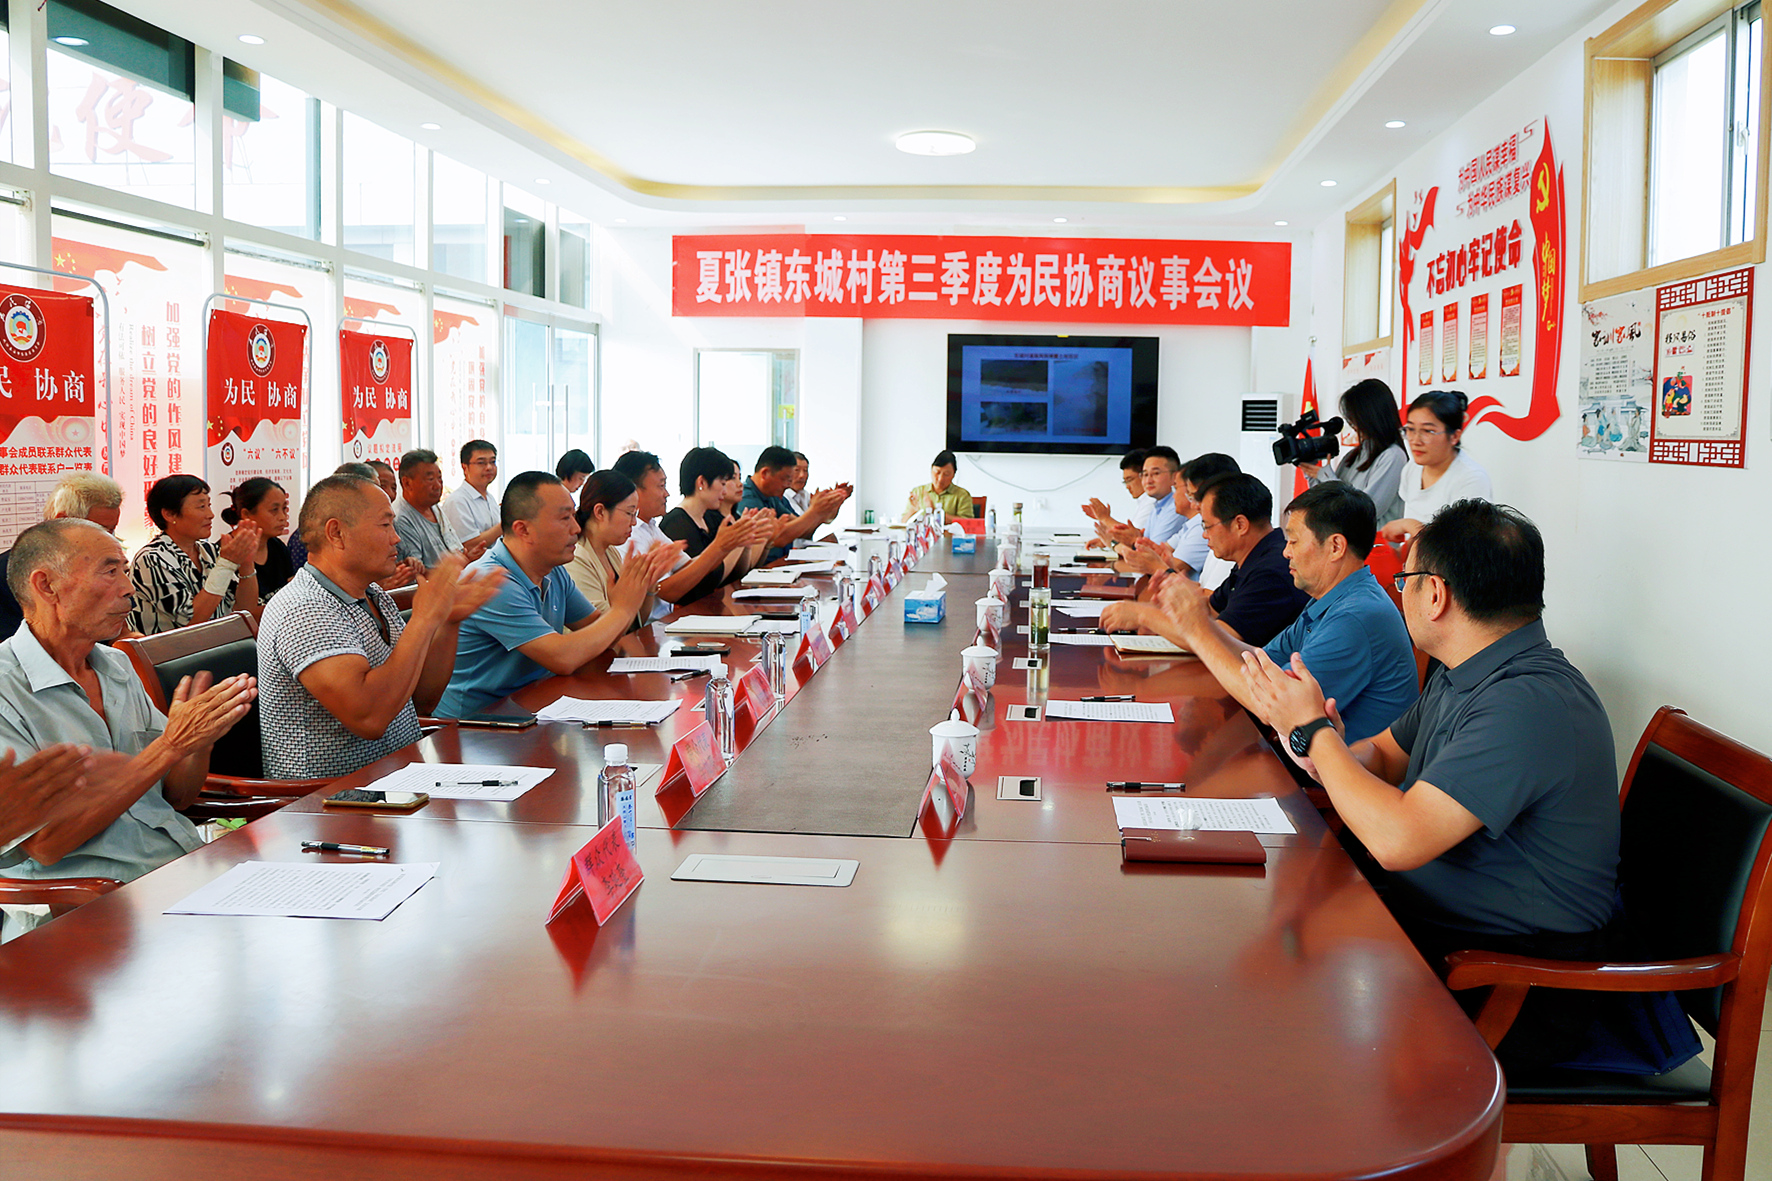 岱岳区夏张镇东城村召开为民协商议事会议。□记者 刘涛 报道